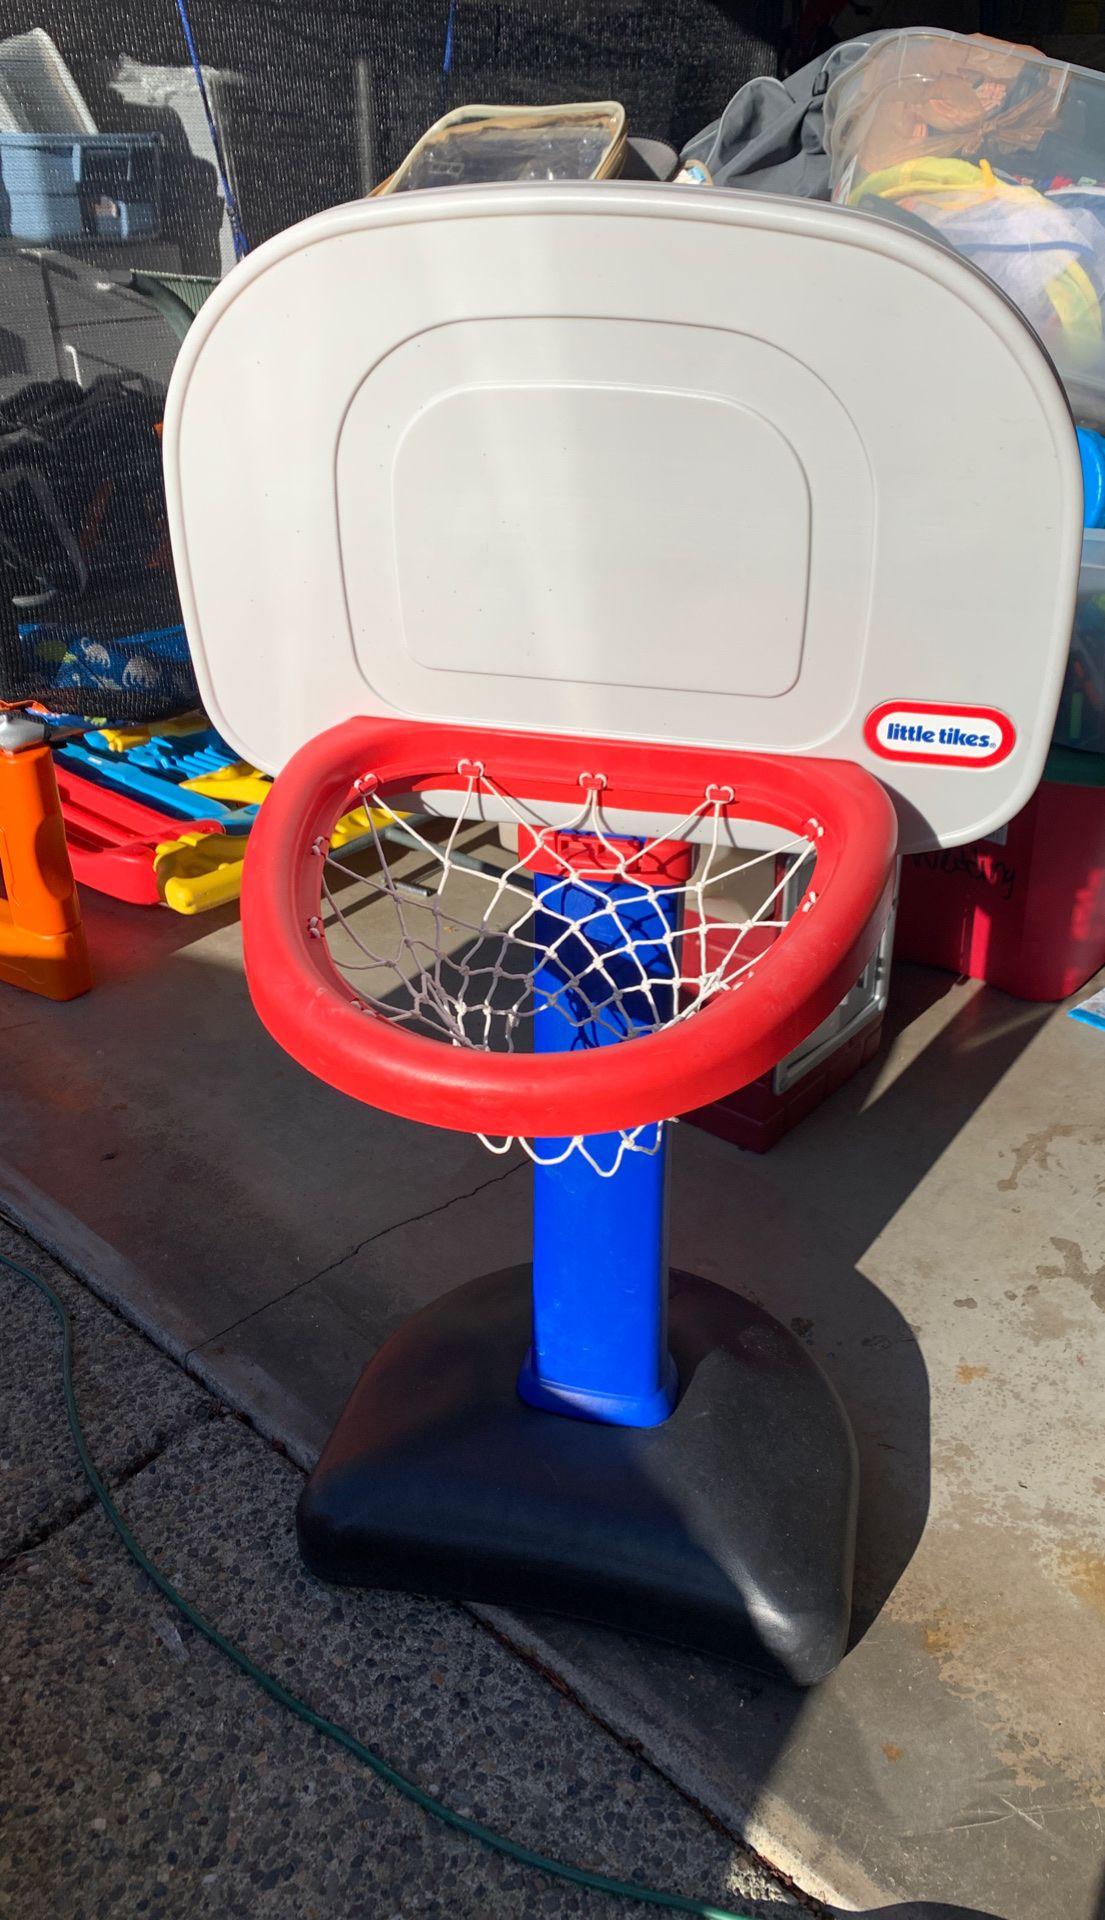 Little tikes adjustable basketball hoop